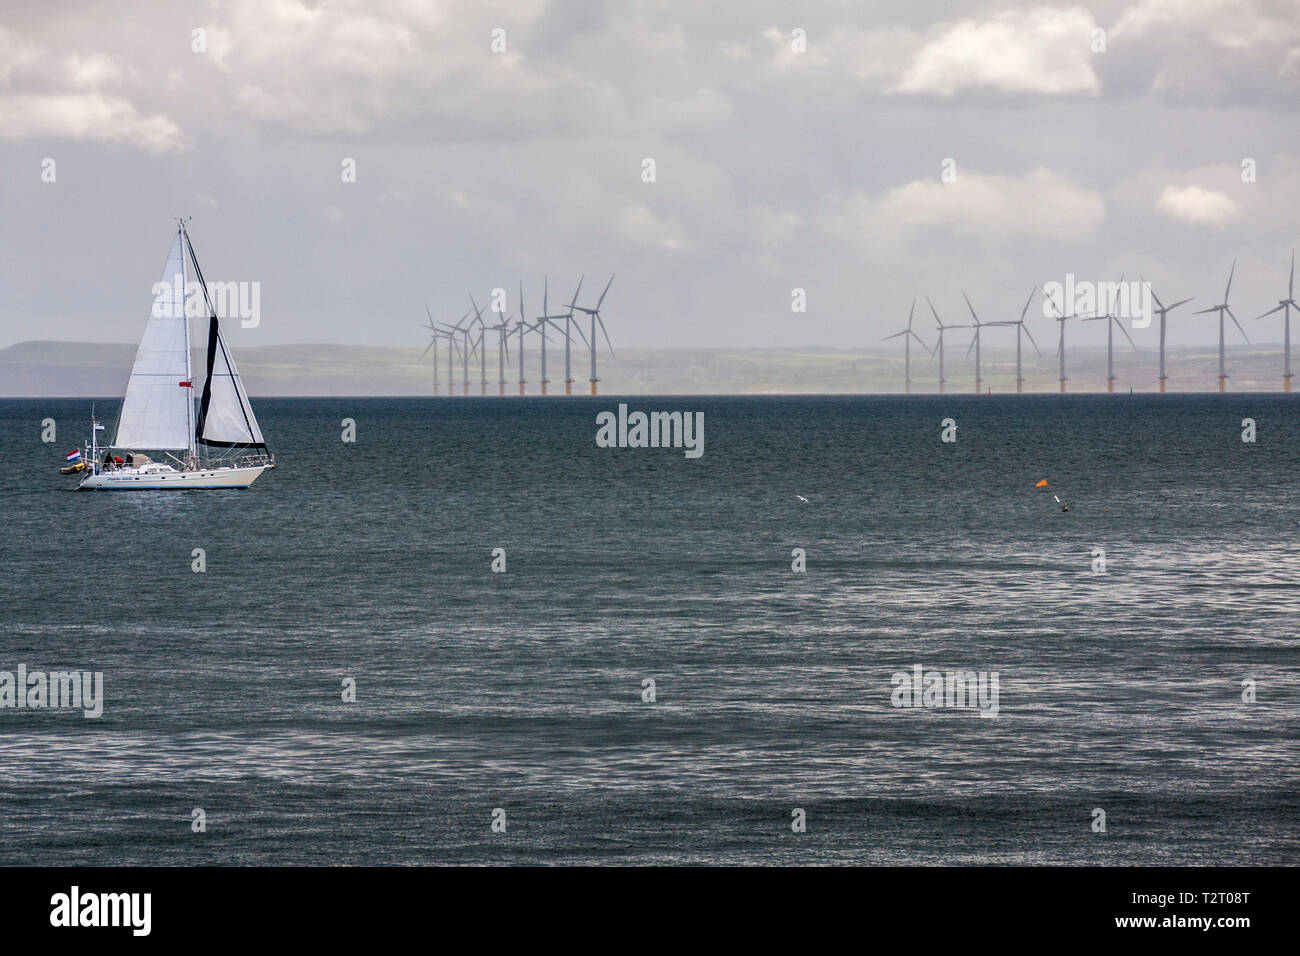 Ein Segelboot überschrift in den Hafen von Hartlepool Landspitze im Nordosten Englands mit Offshore- Windenergieanlagen im Hintergrund Stockfoto